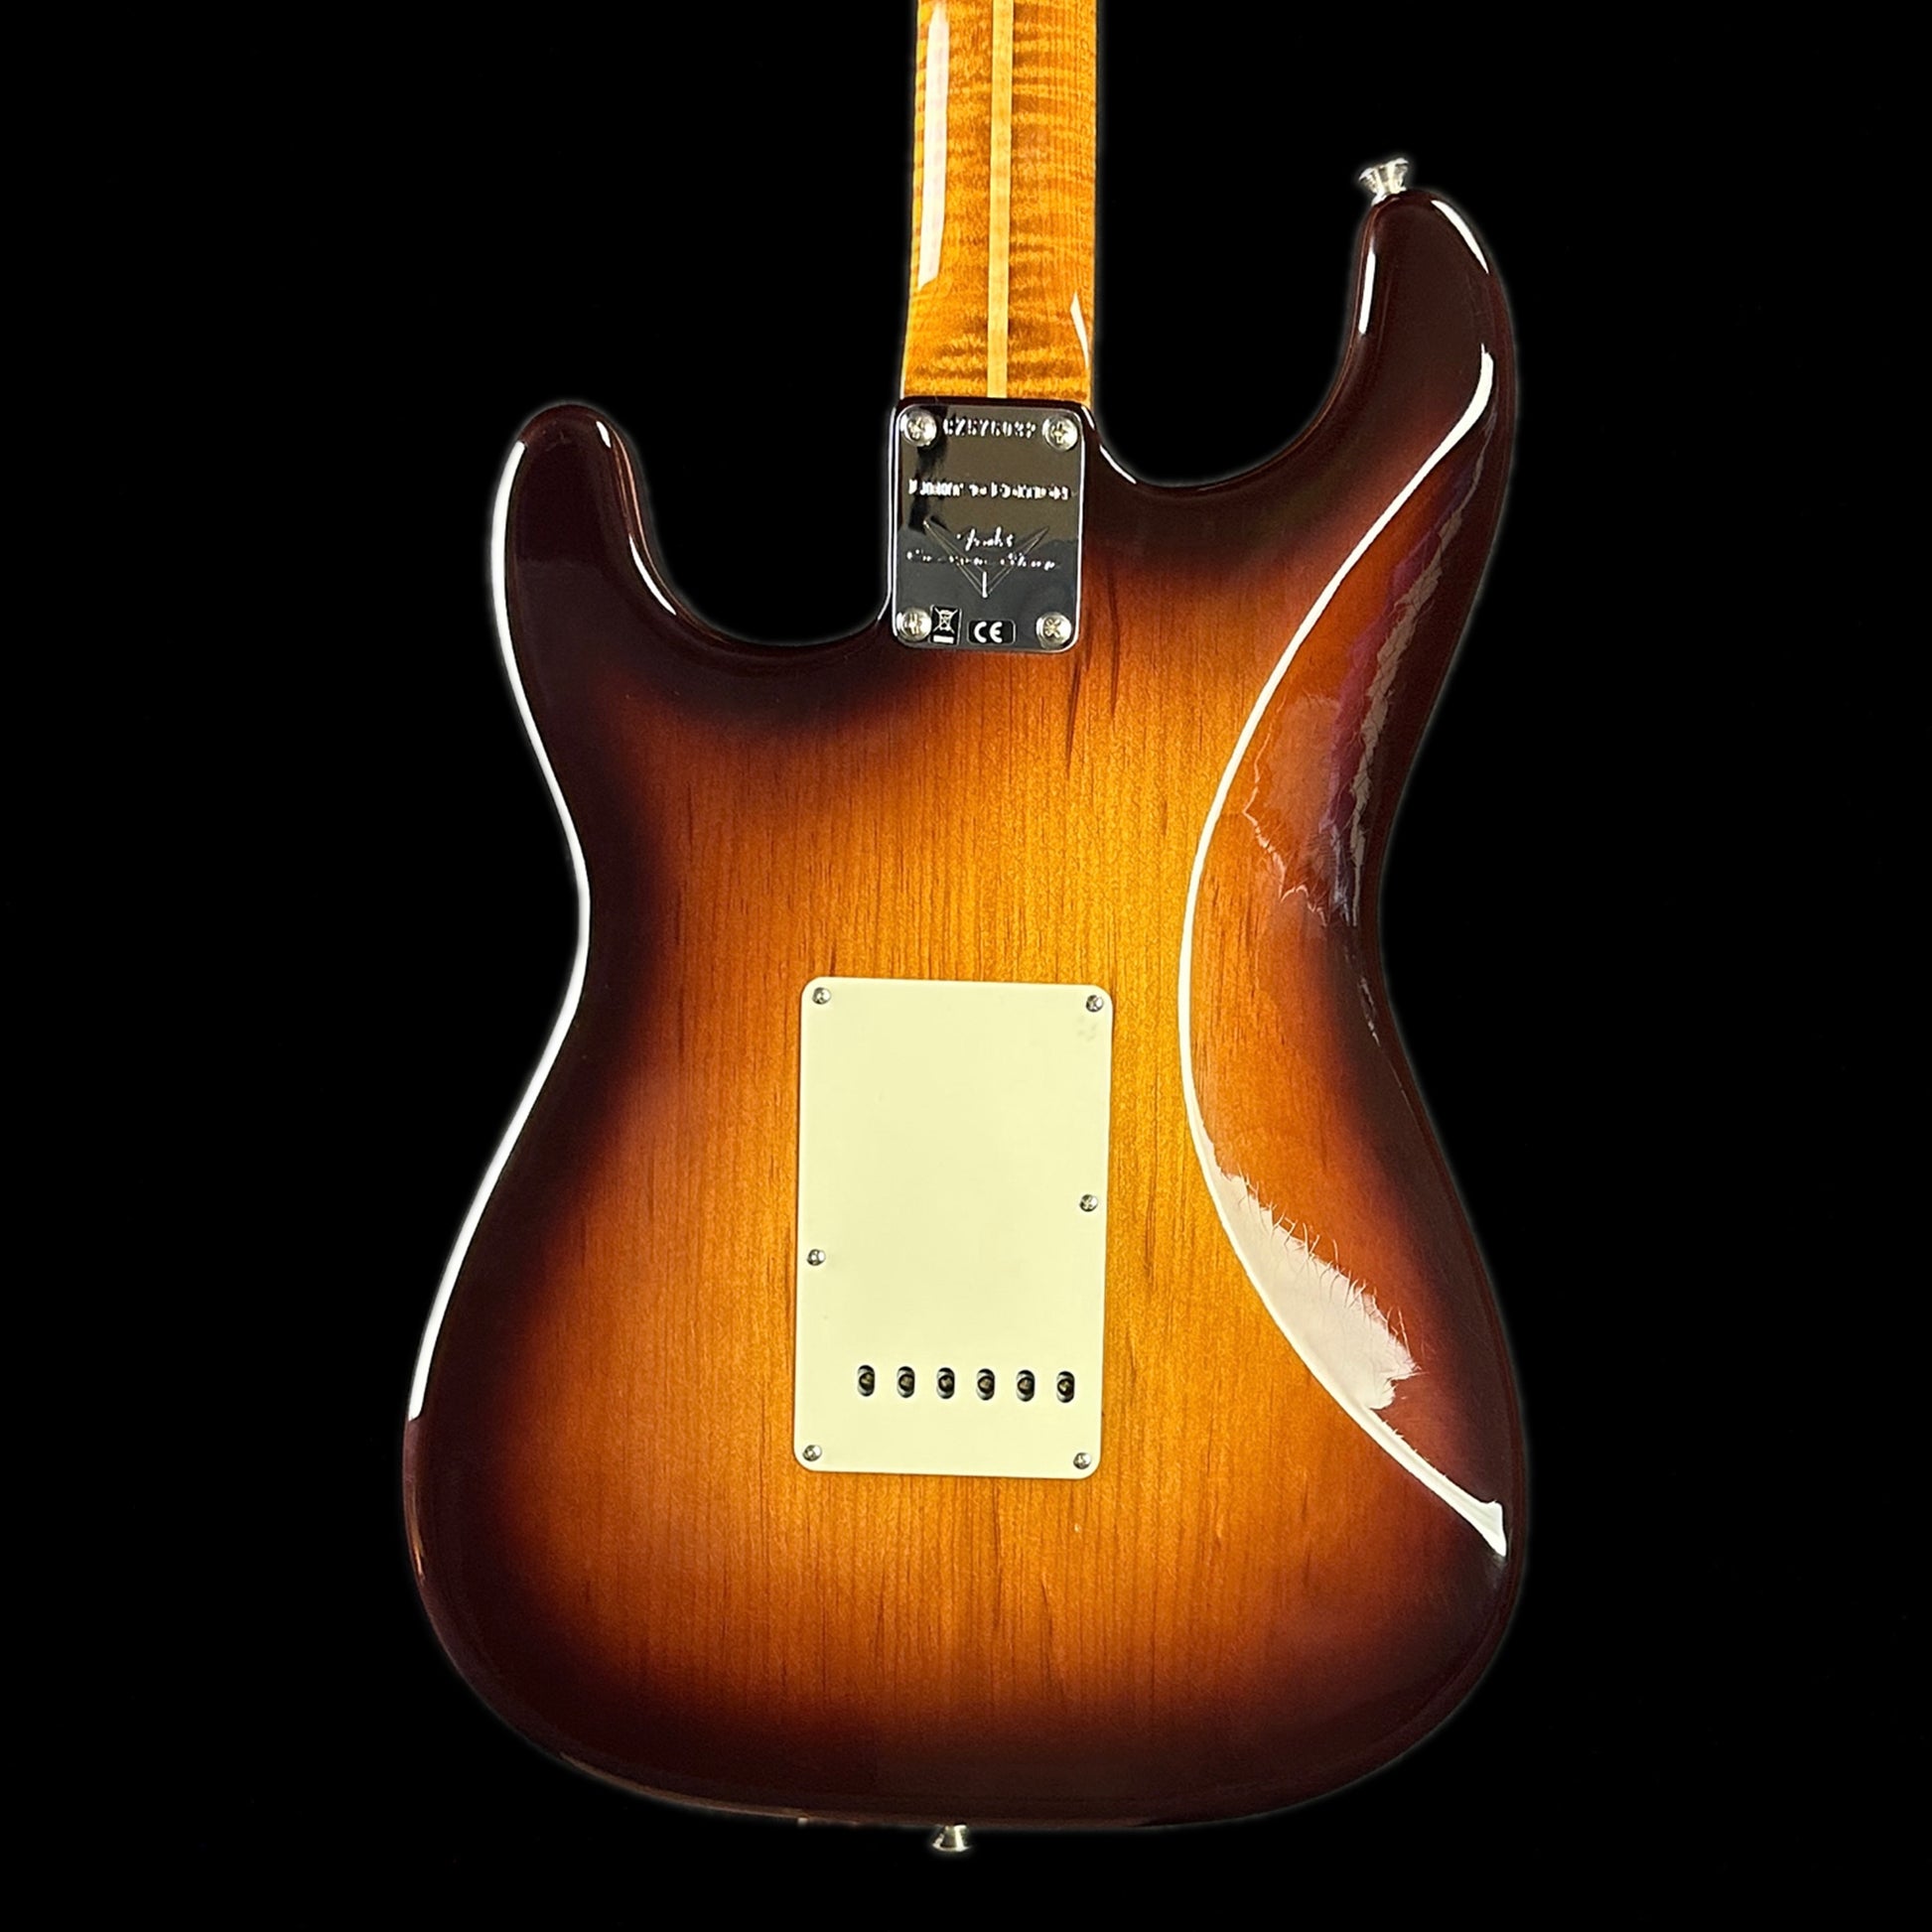 Back of body of Fender Custom Shop Limited Edition Roasted Pine Chocolate 2 Tone Sunburst.